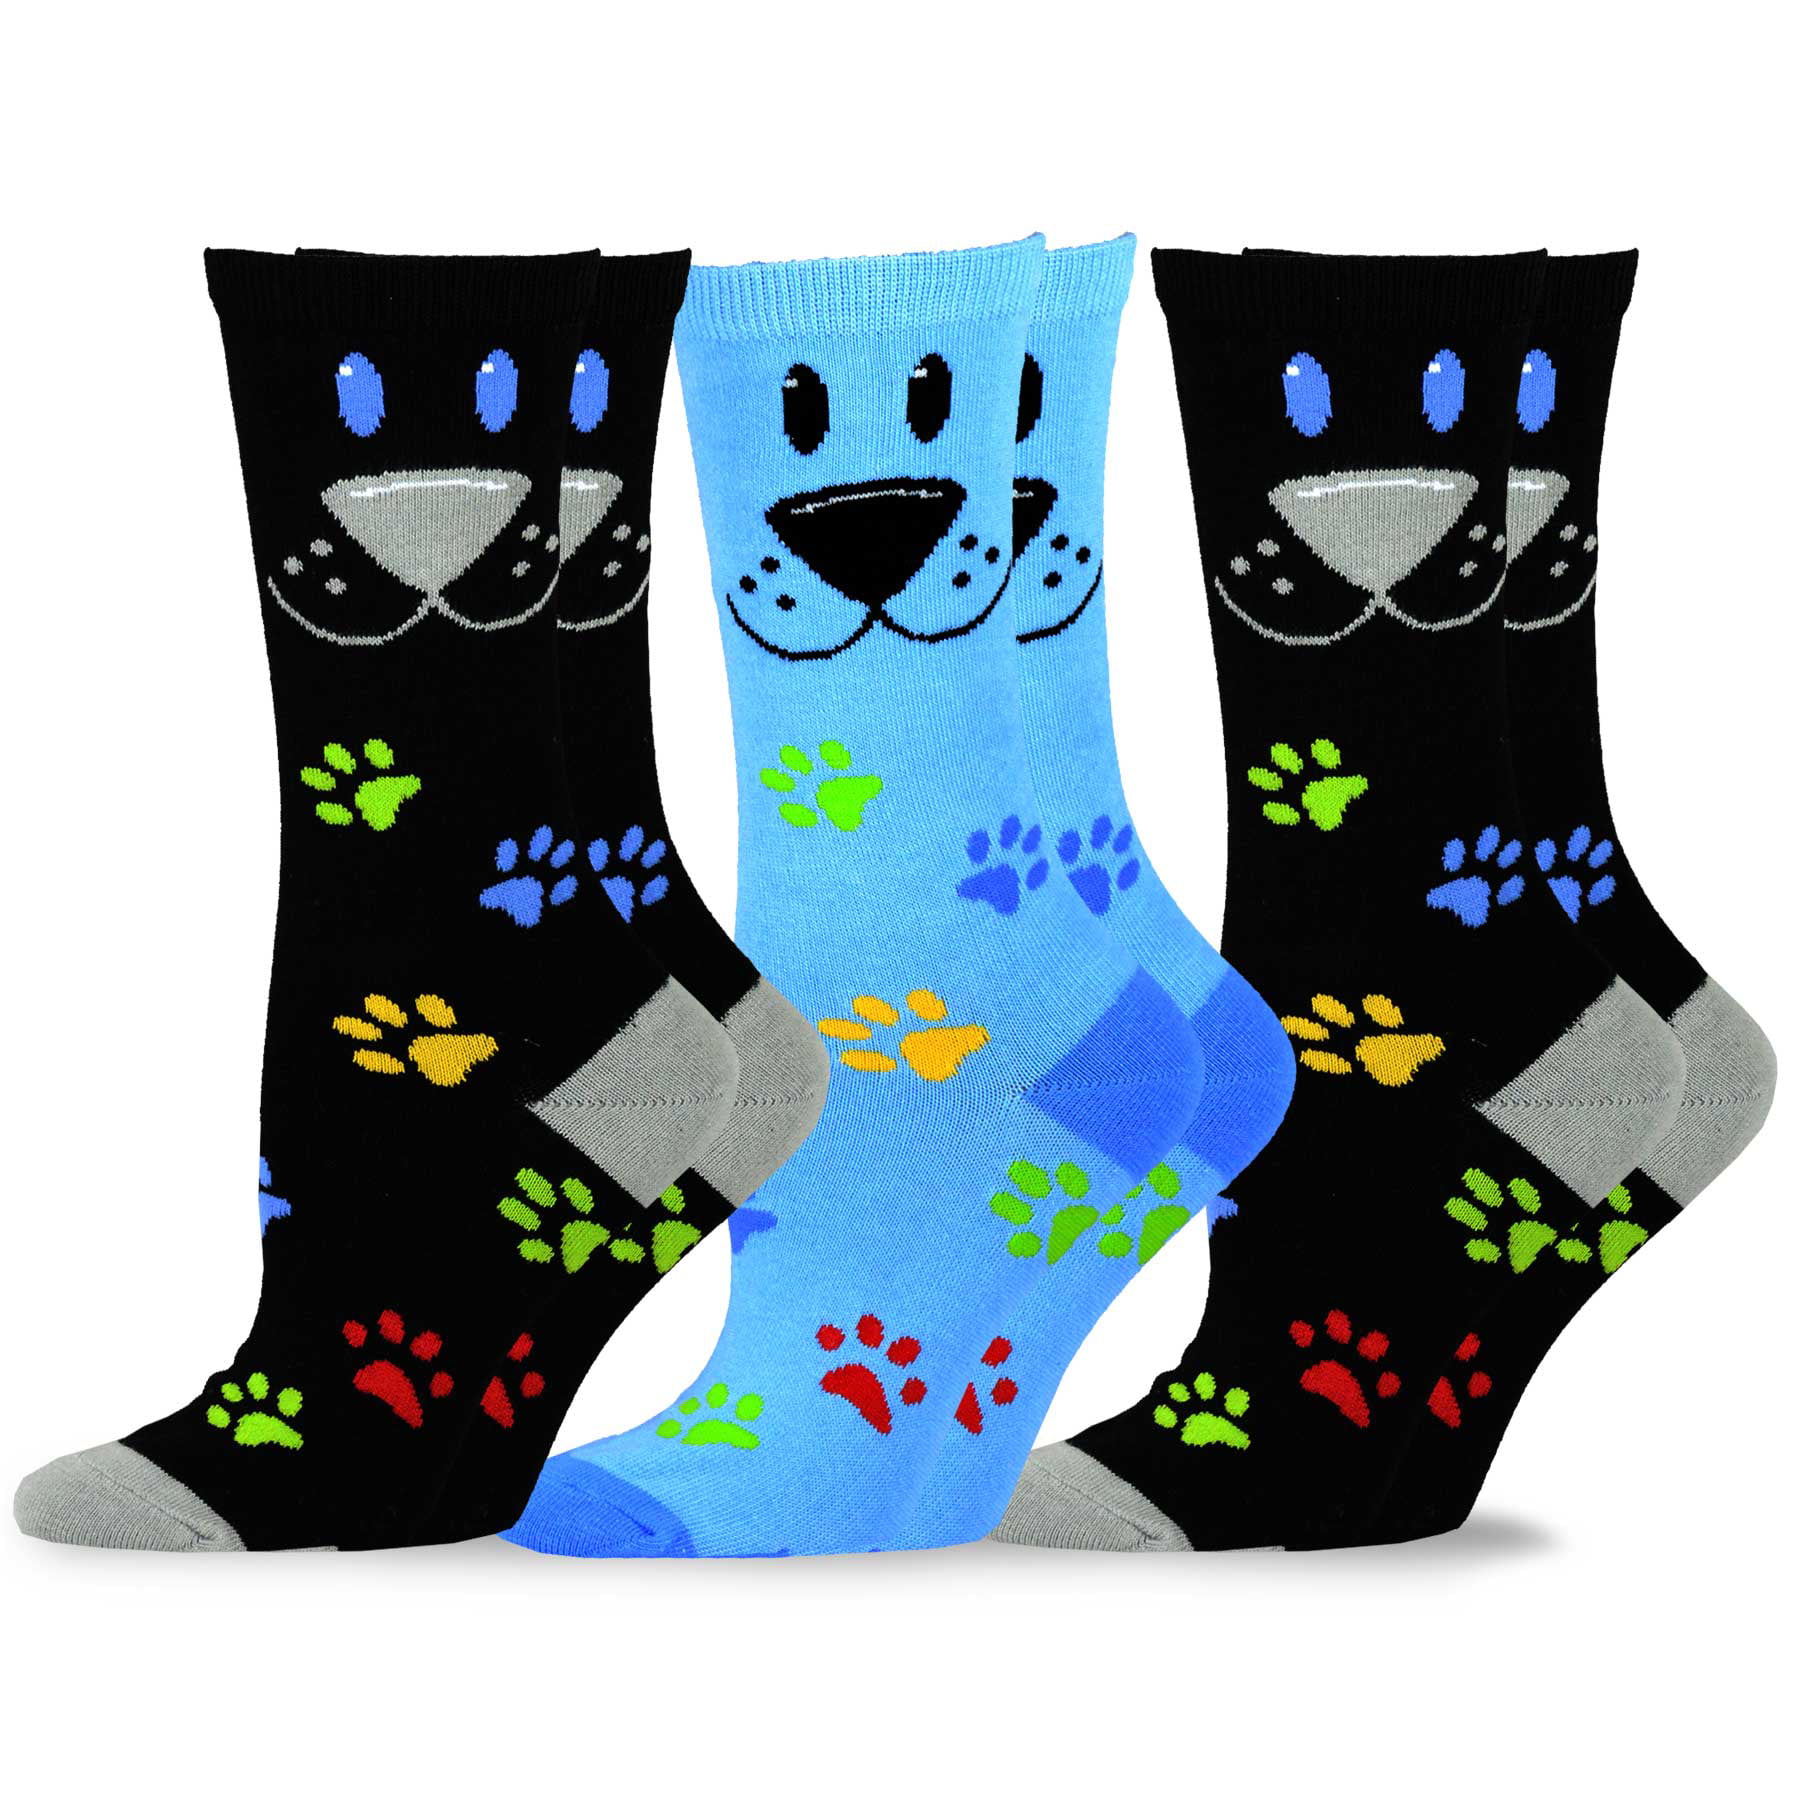 Details about   Women's Penguin Socks Animal Print Socks Pair 